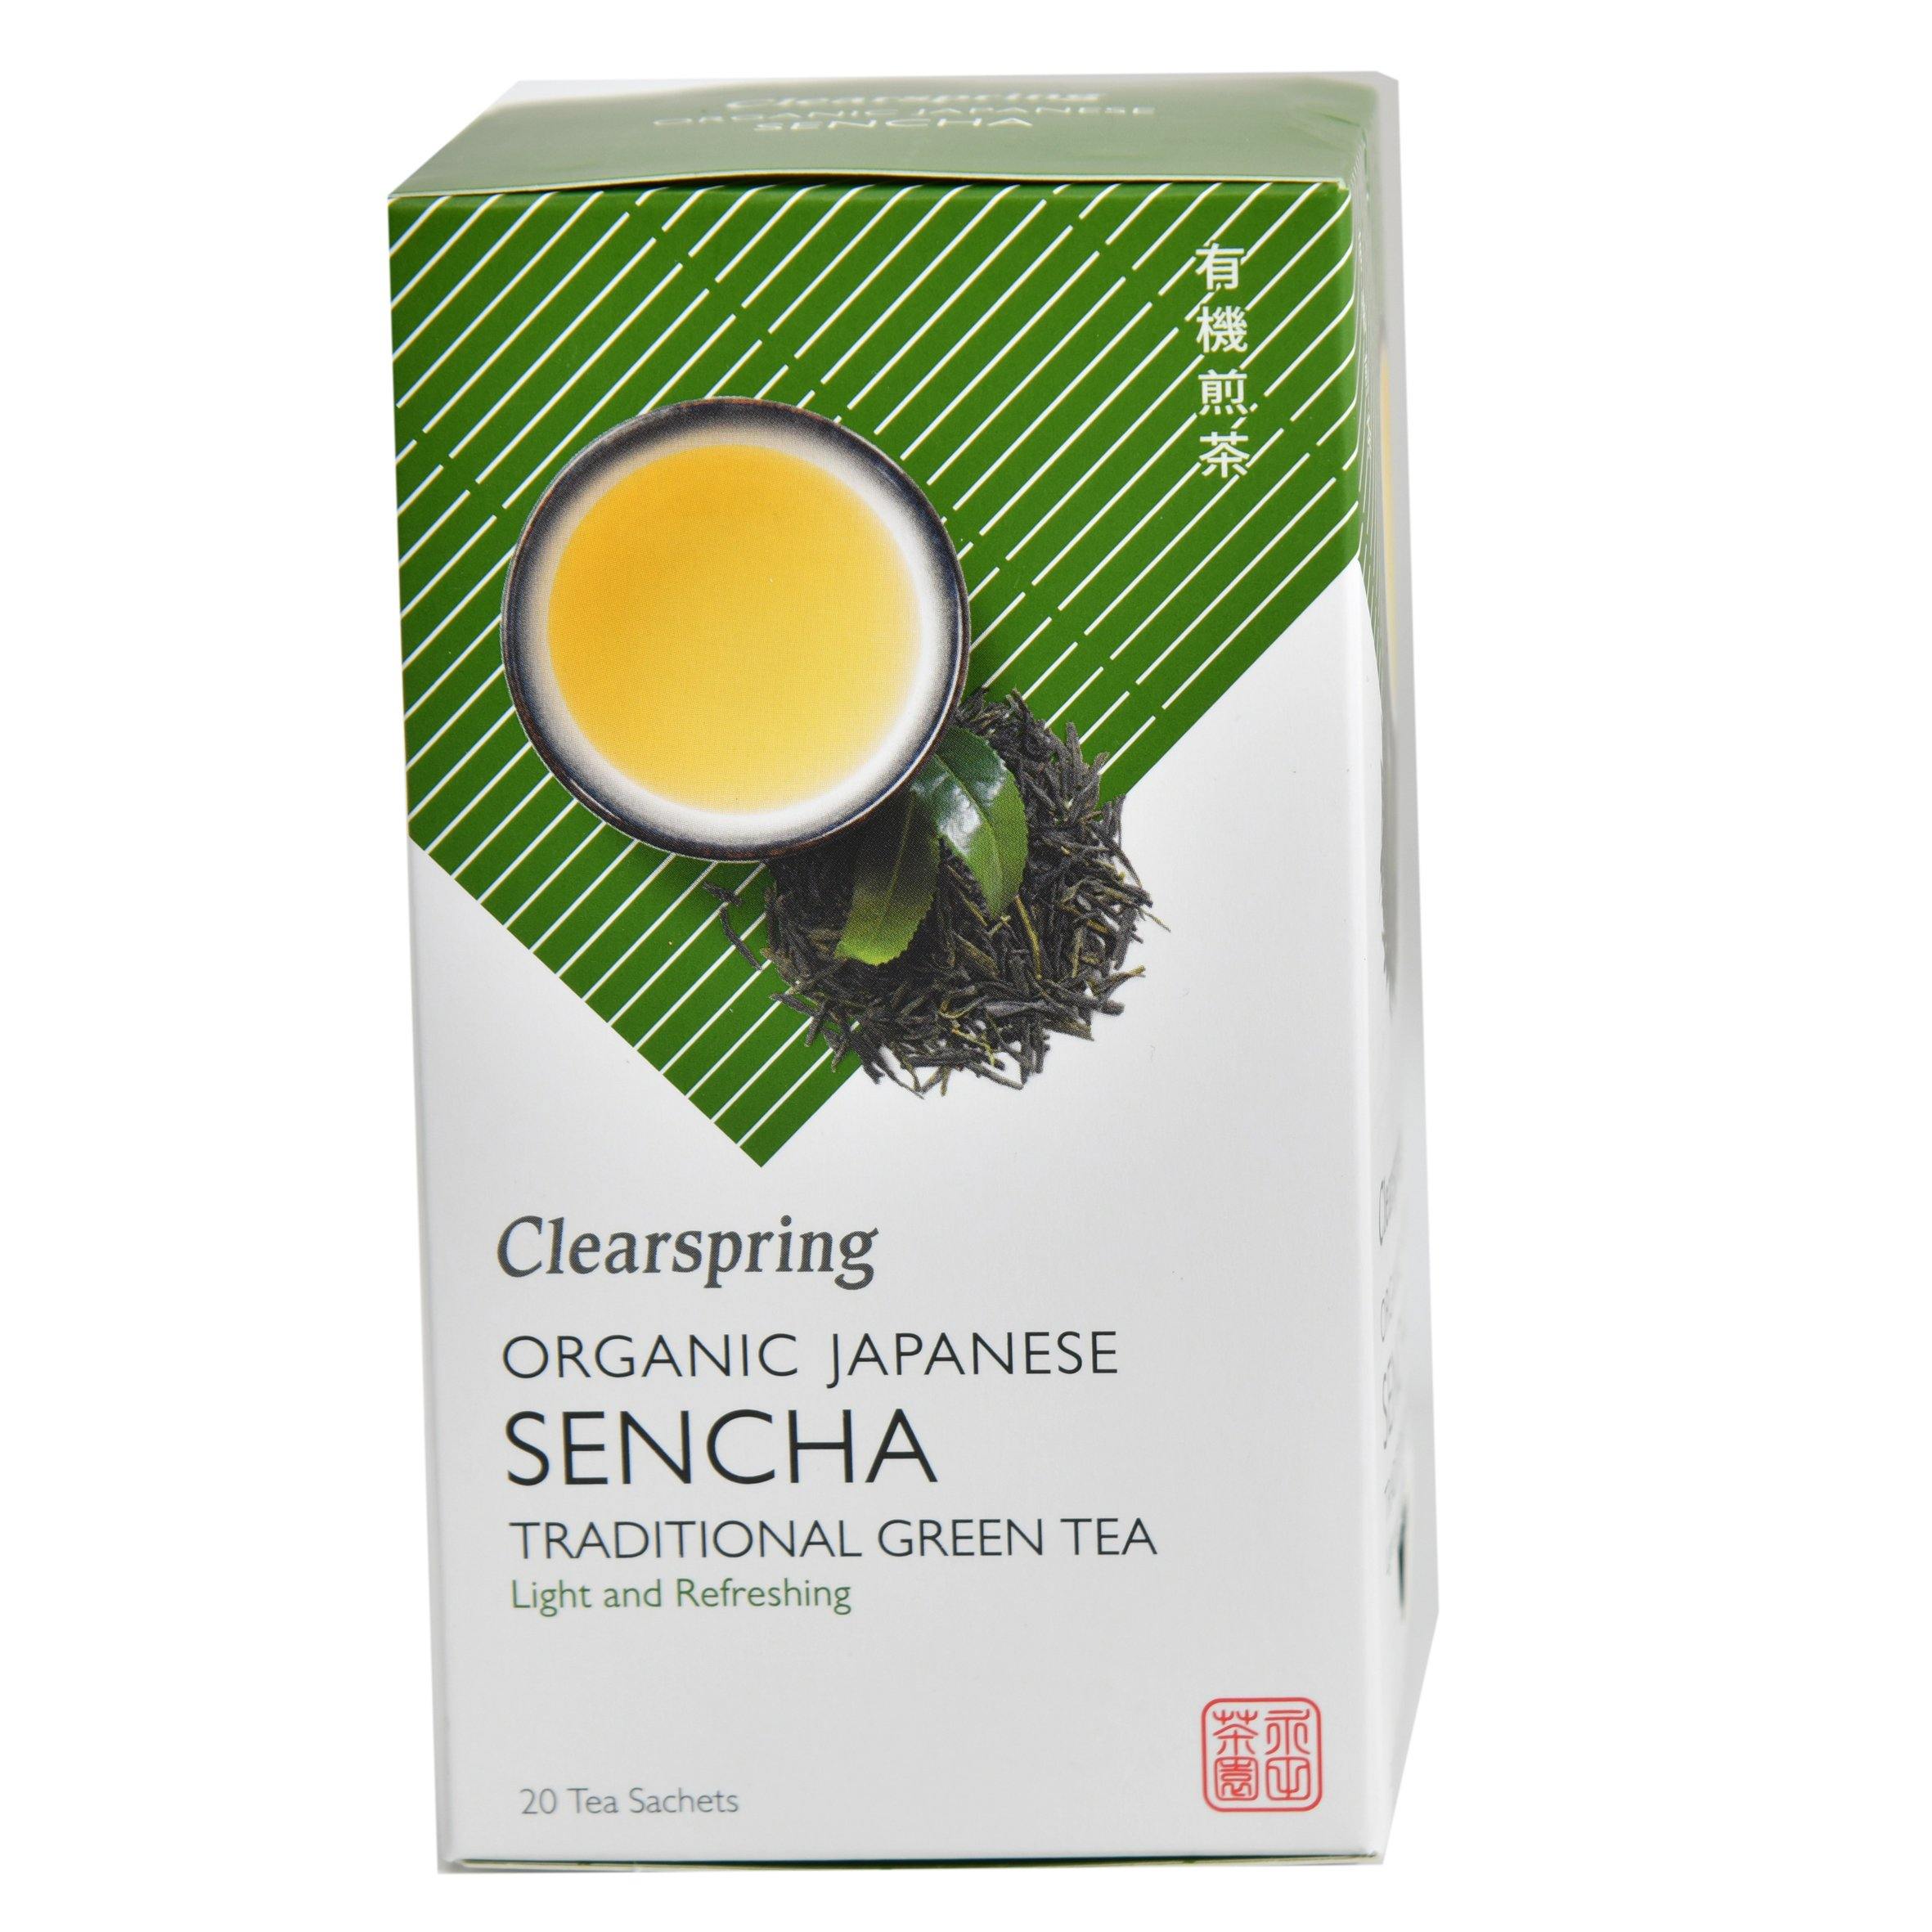 شاي السنشا العضوي نوع من أنواع الشاي الأخضر  من كلير إسبرنج - الغذاء الحيوي